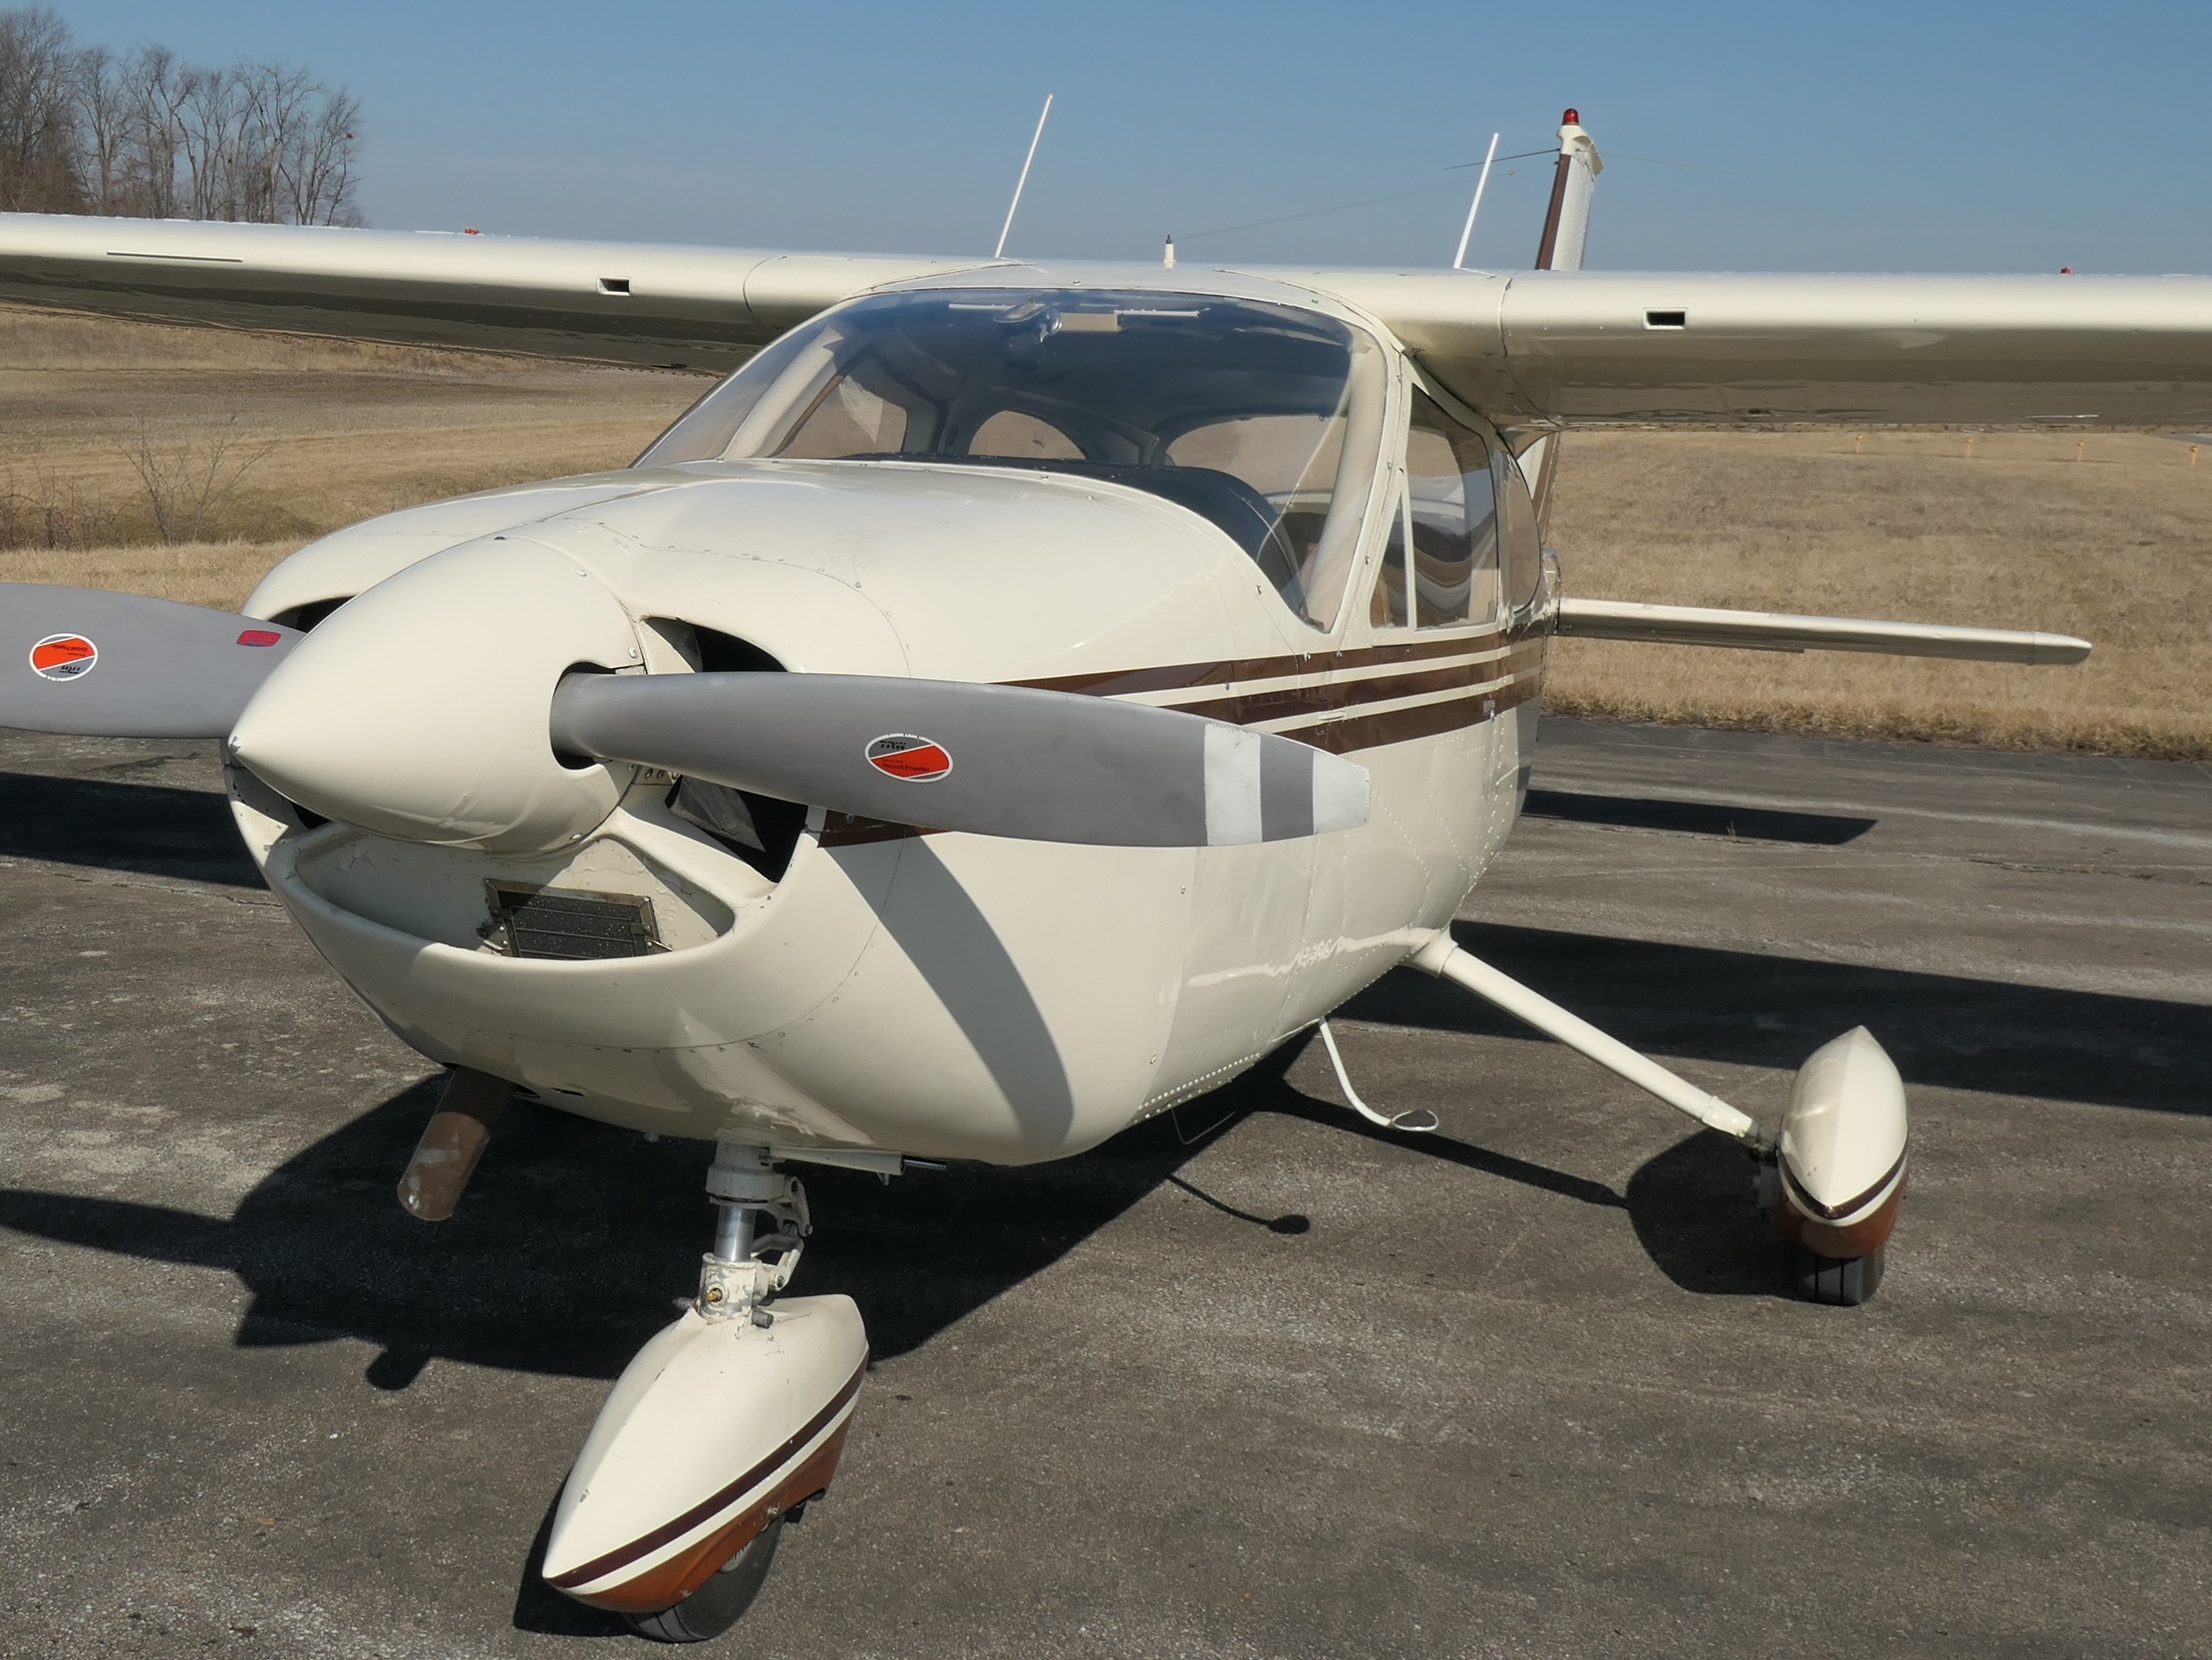 Cessna 177 180HP - N29554